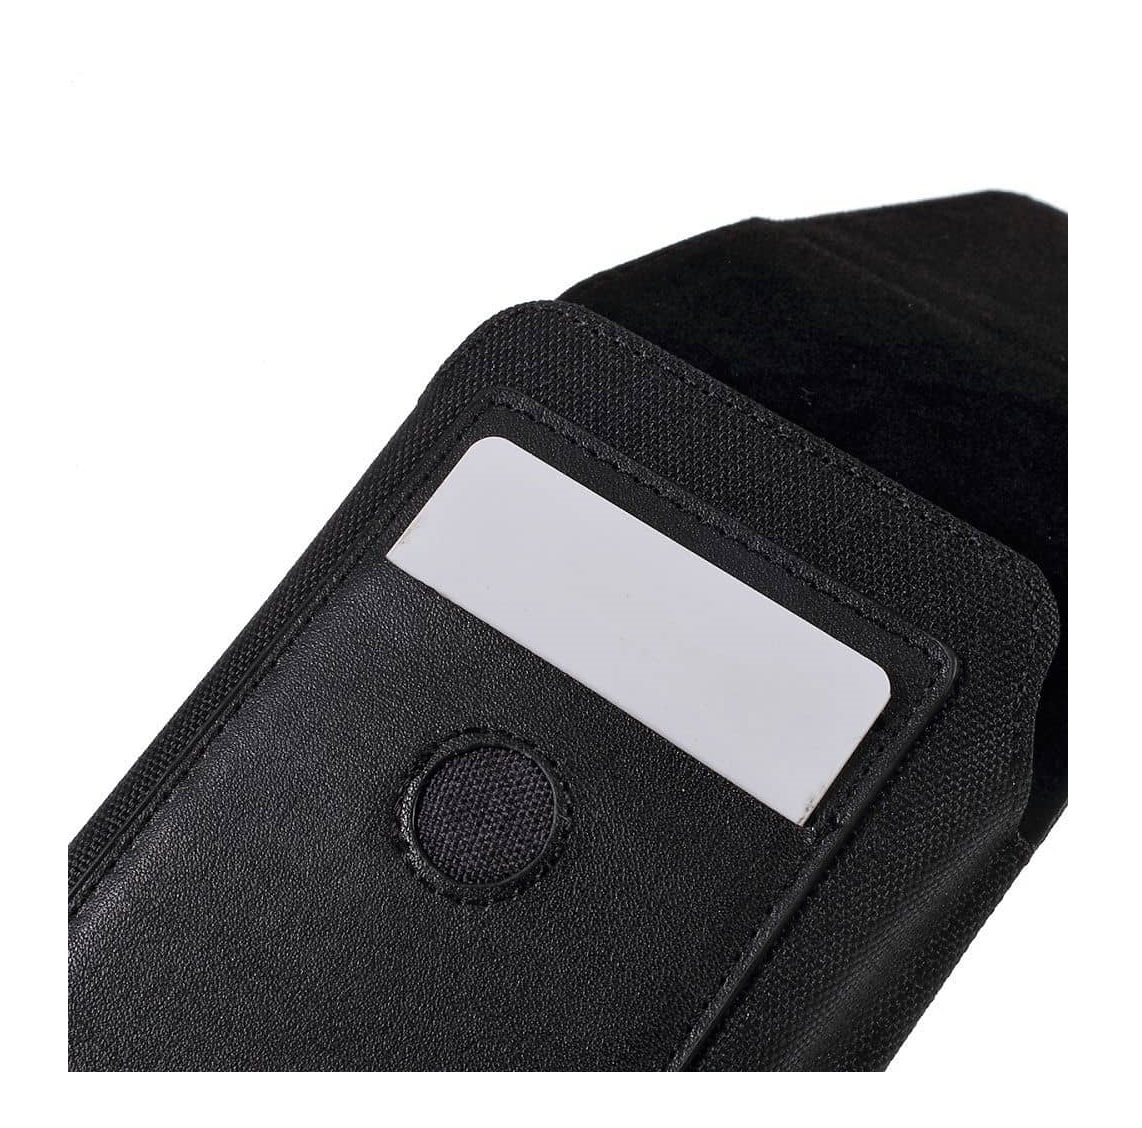 縮圖 102  - Handy-Zubehör Für Blackview R6: Hülle Taschen Gürtelclip Schutzhüllen Armbänd...